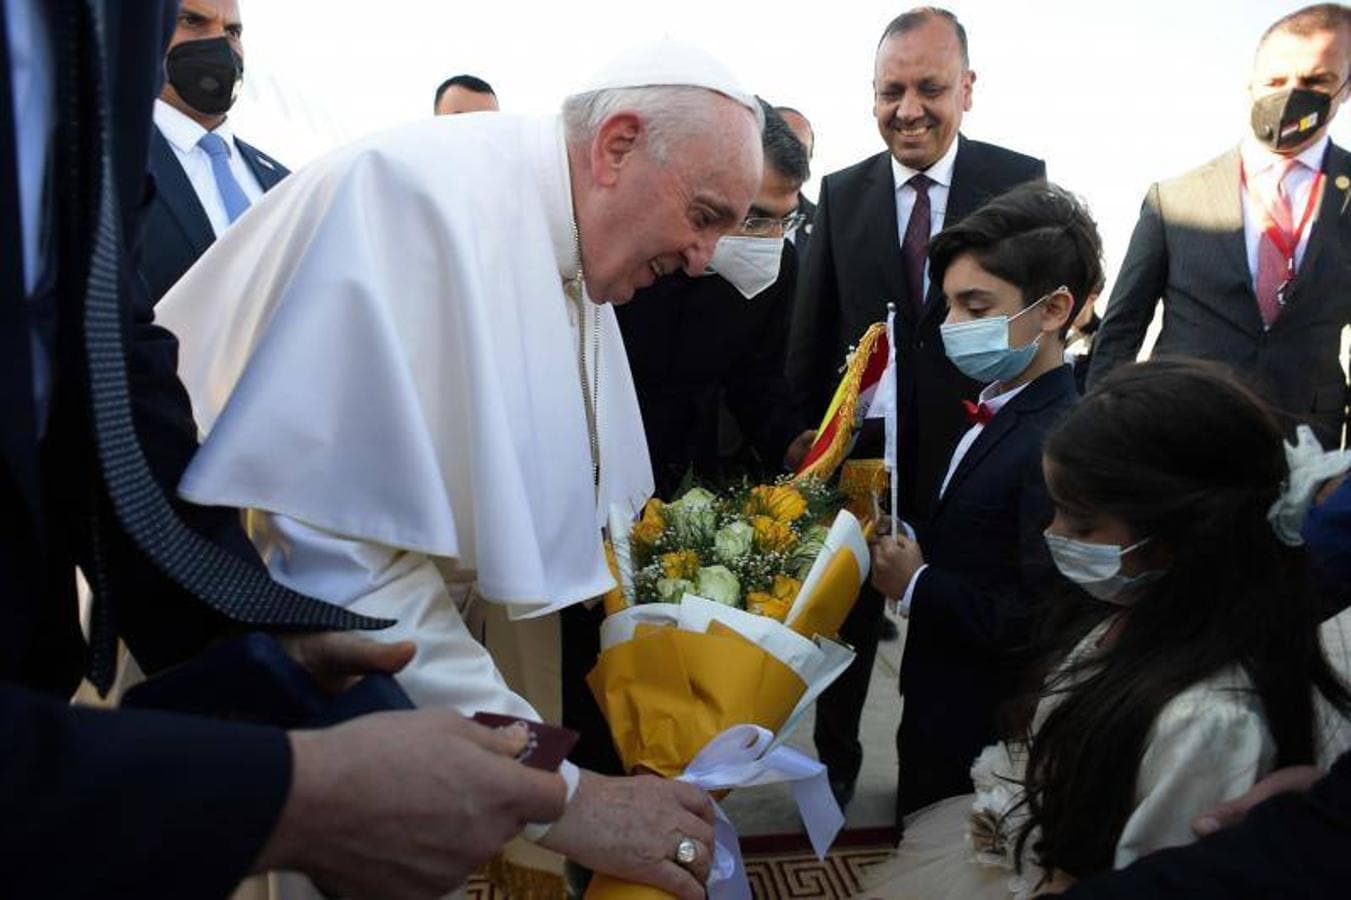 Una imagen proporcionada por los medios de comunicación del Vaticano muestra al Papa Francisco recibiendo un ramo de flores de un niño antes de su reunión con el alto clérigo chiíta iraquí, el Gran Ayatolá Ali al-Sistani en Najaf. 